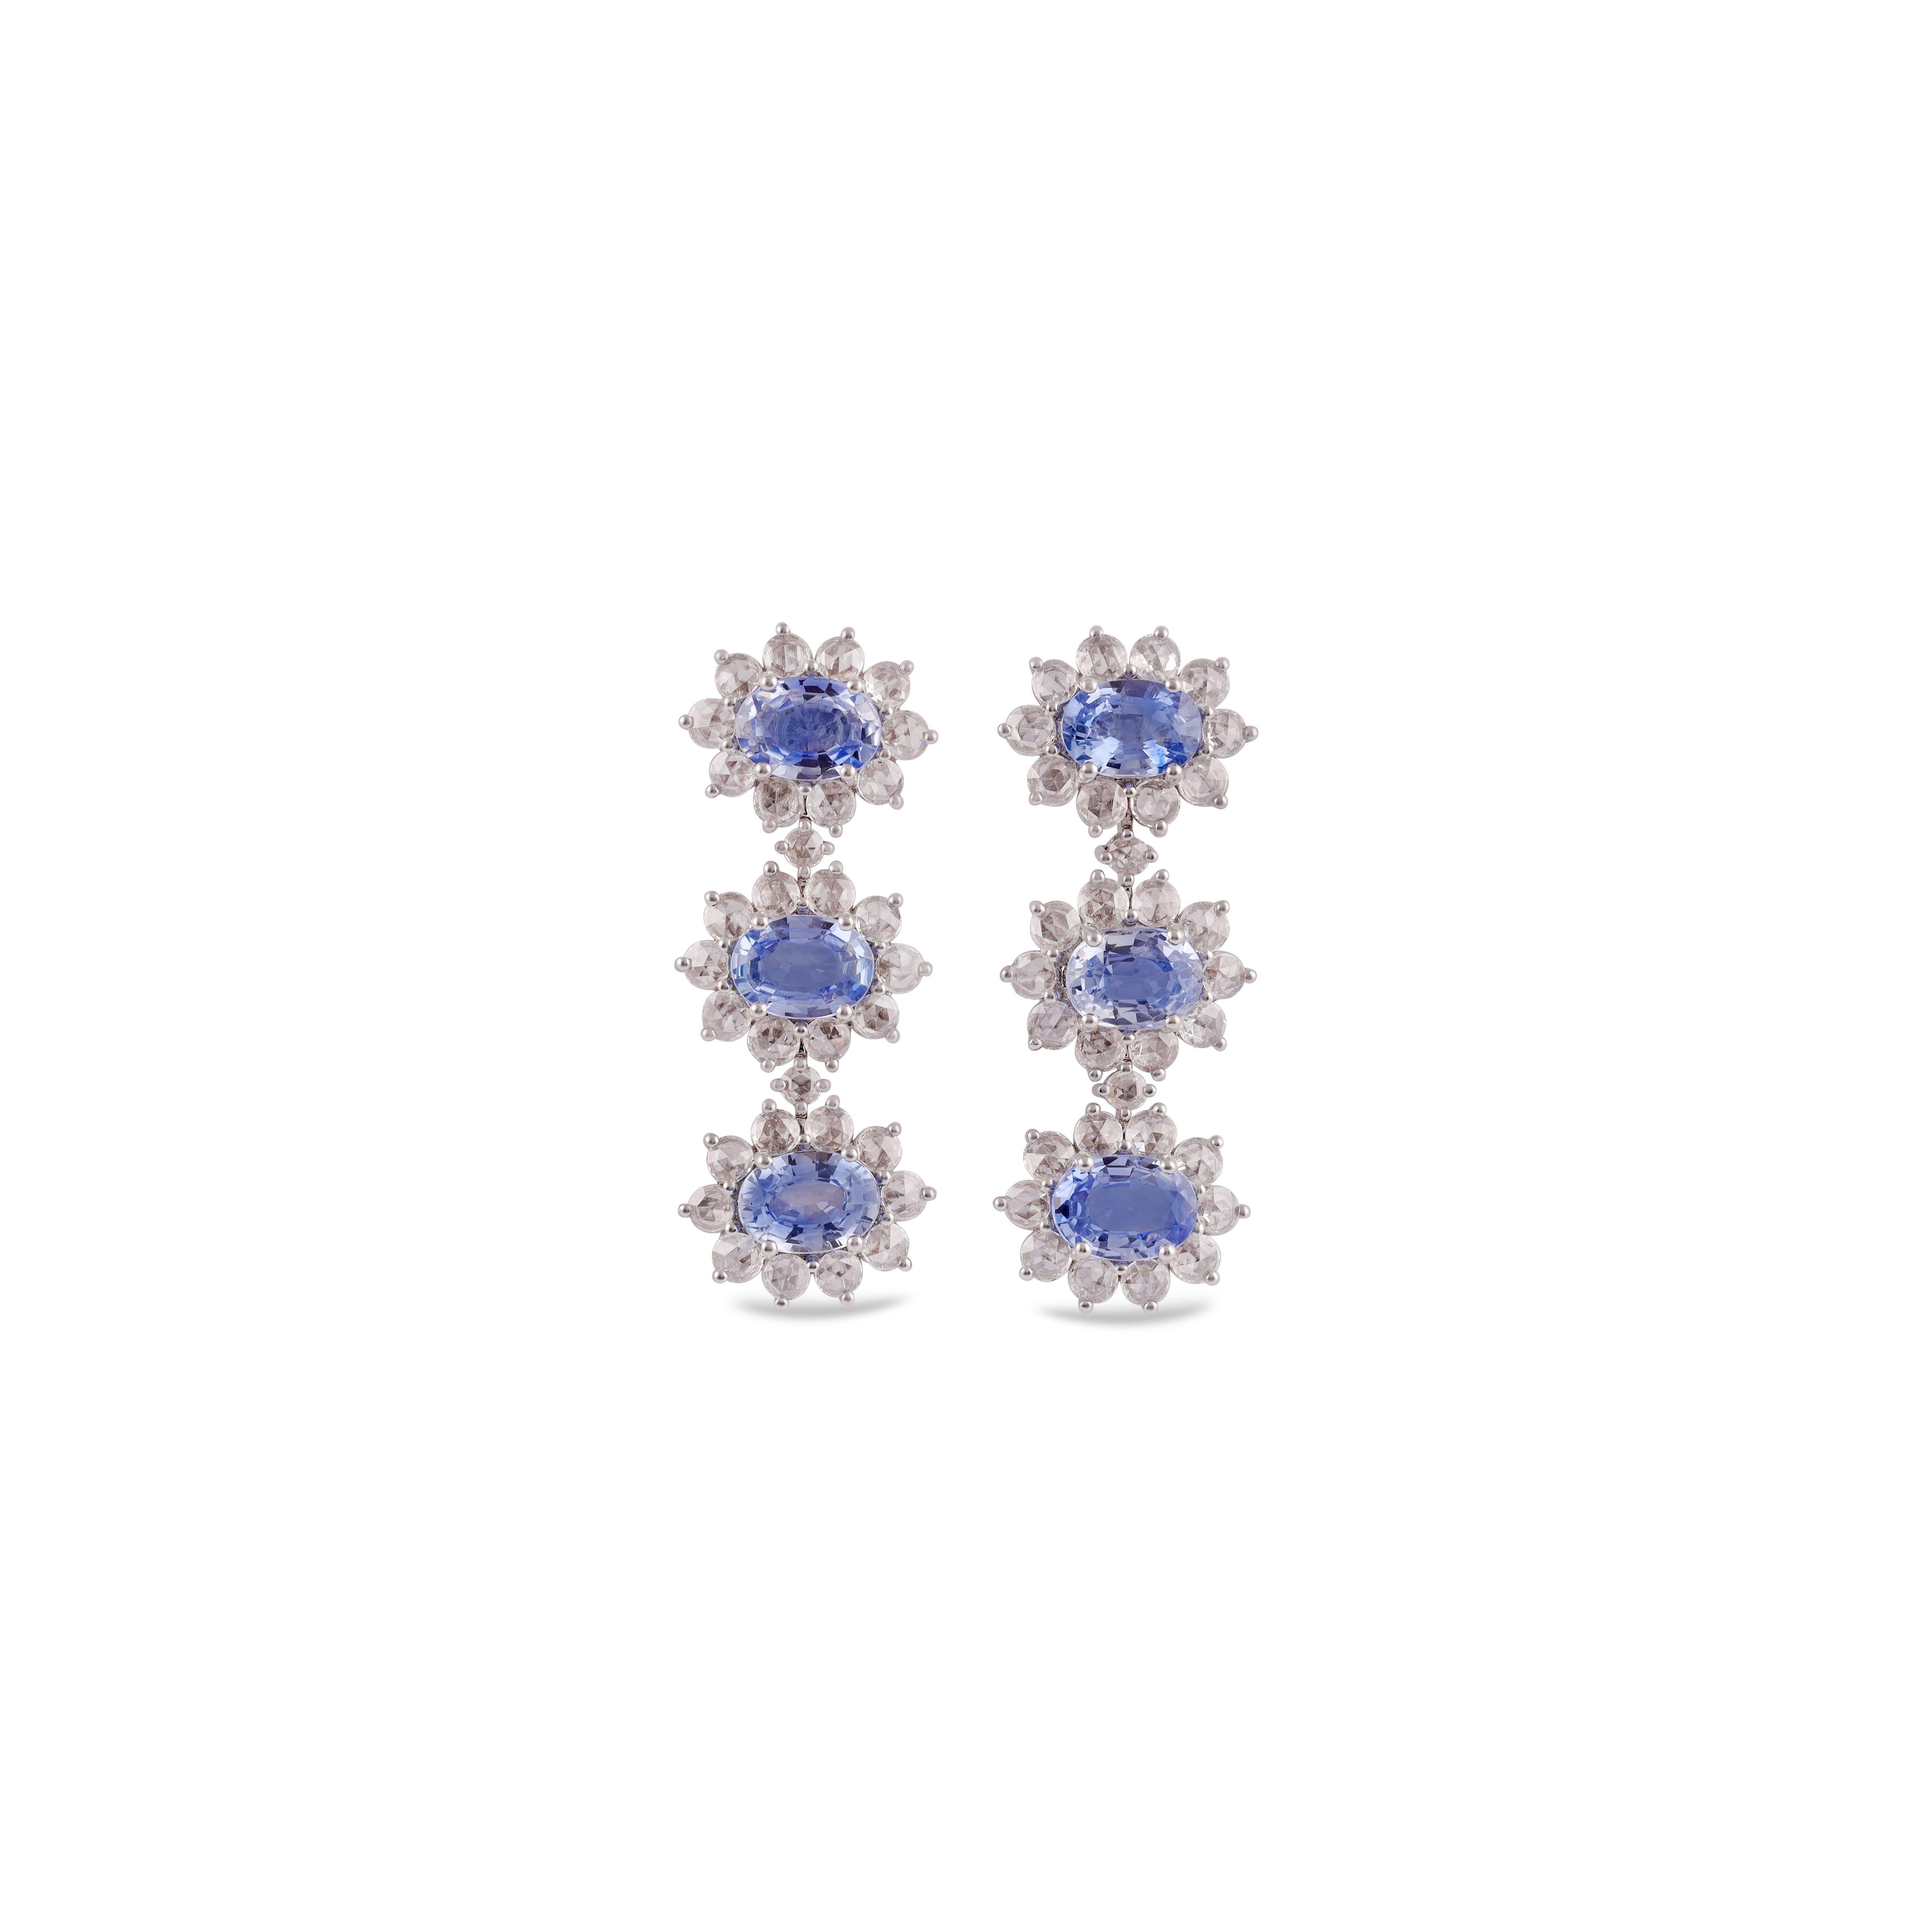 Ces boucles d'oreilles exclusives avec saphir bleu et diamants sont composées de 6 saphirs pesant 5,24 carats, entourés de 64 diamants ronds.  de diamants pesant 1,73 carats, Ces boucles d'oreilles sont entièrement cloutées en or blanc 18k, les